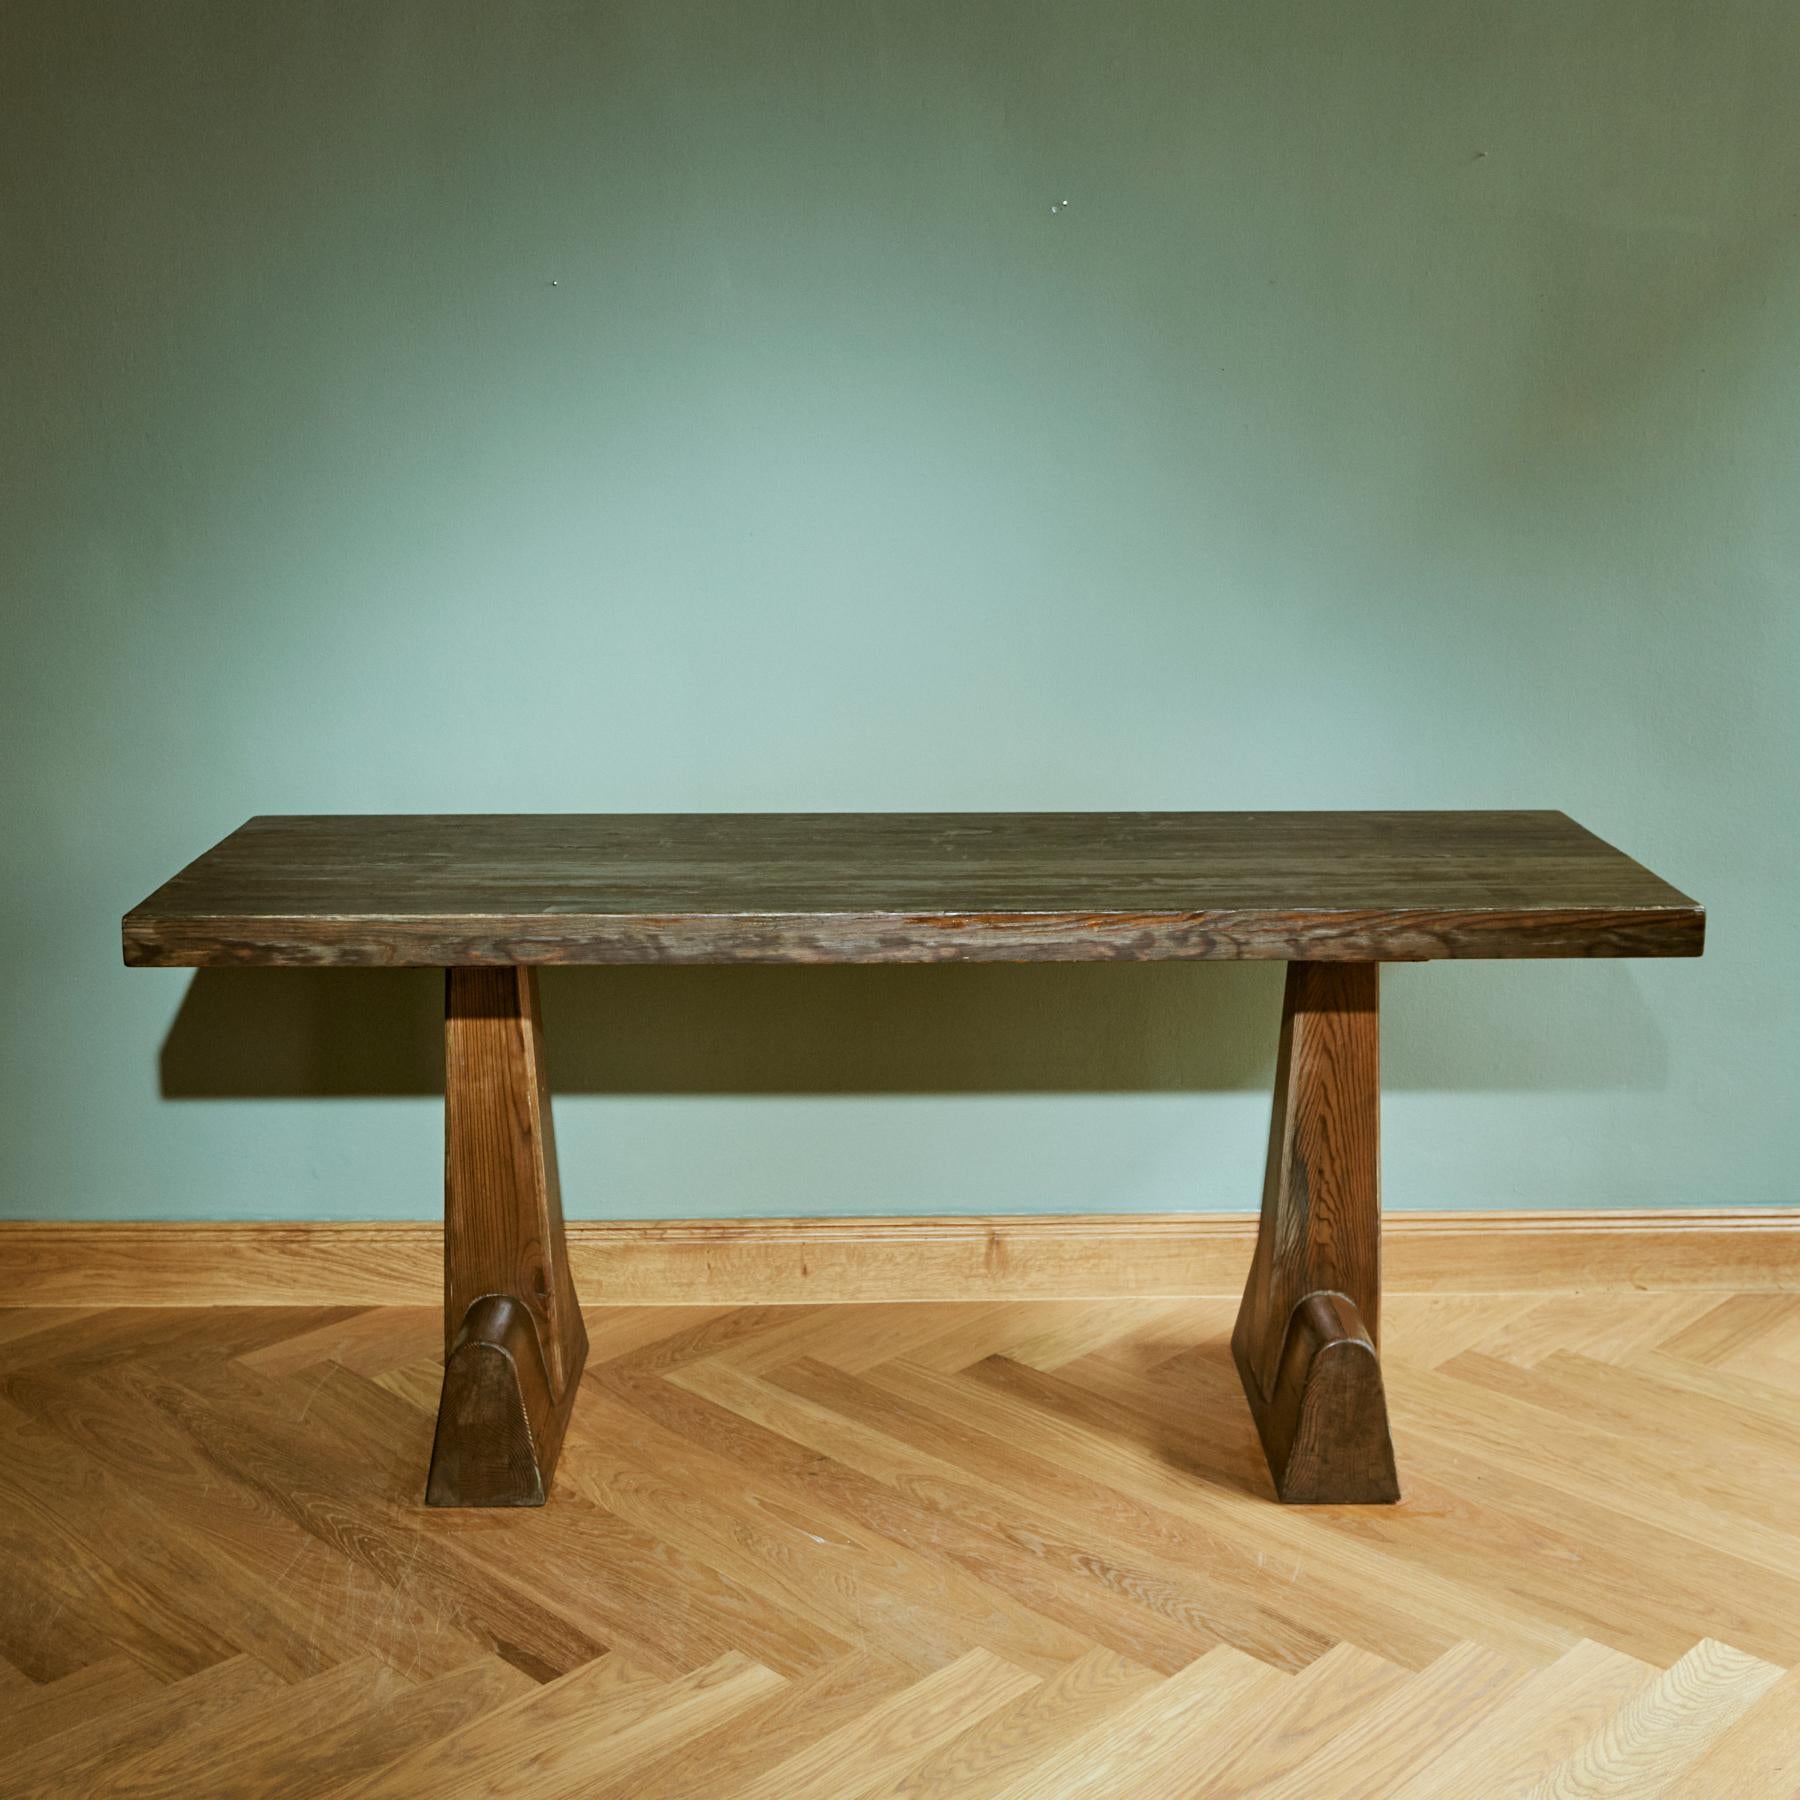 Dieser von der AB Nordiska Kompaniet hergestellte Tisch gehört zu Hjorths Serie modernistischer Kabinenmöbel aus den 1930er Jahren. 

Der Architekt und Industriedesigner Axel Einar Hjorth (1888 - 1959) war eine der führenden Persönlichkeiten der